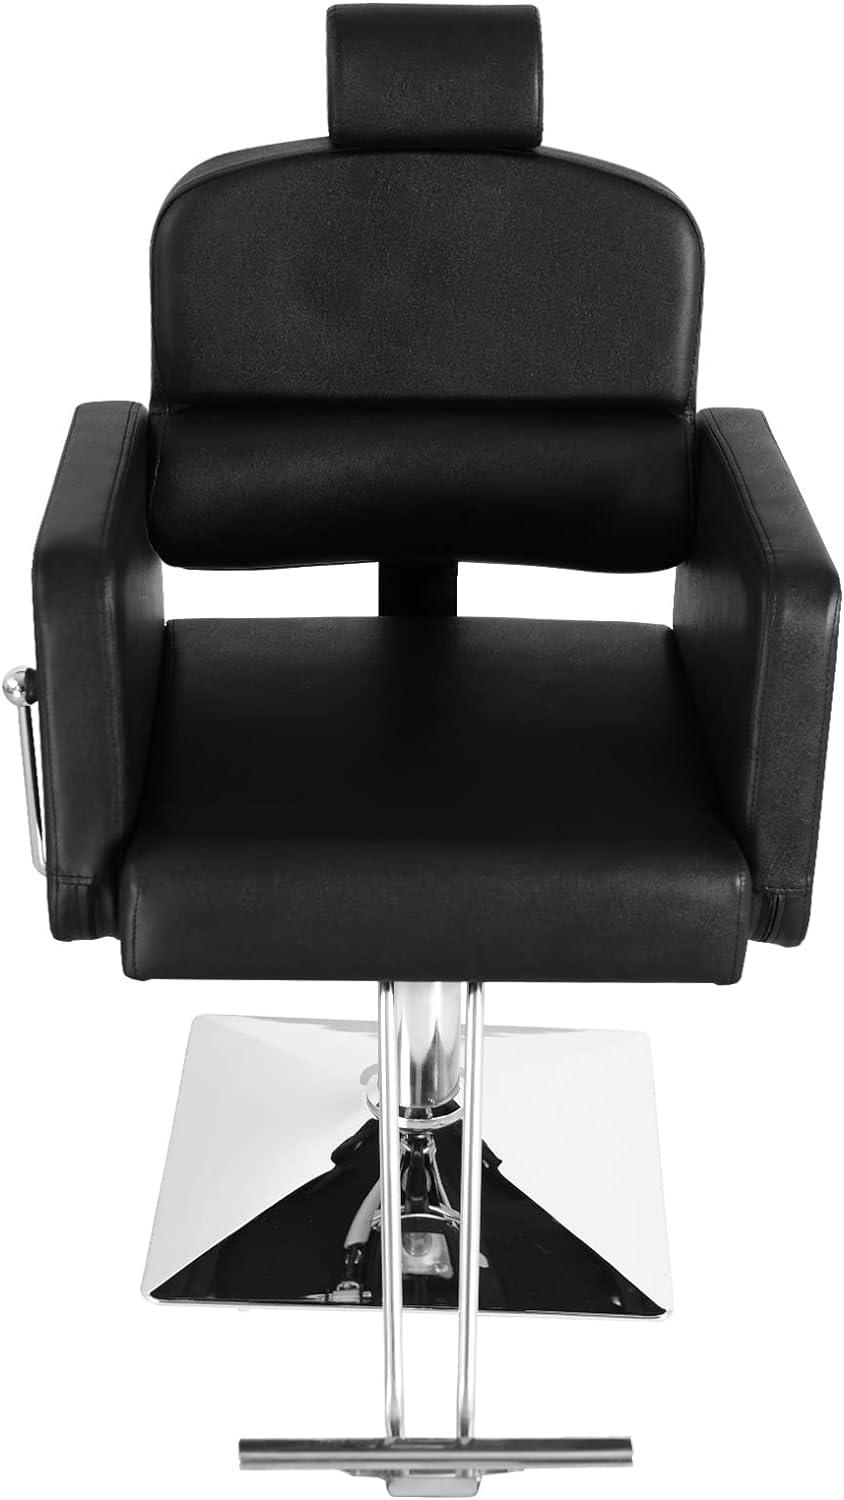 Silla de salón reclinable, silla de peluquería, silla de spa